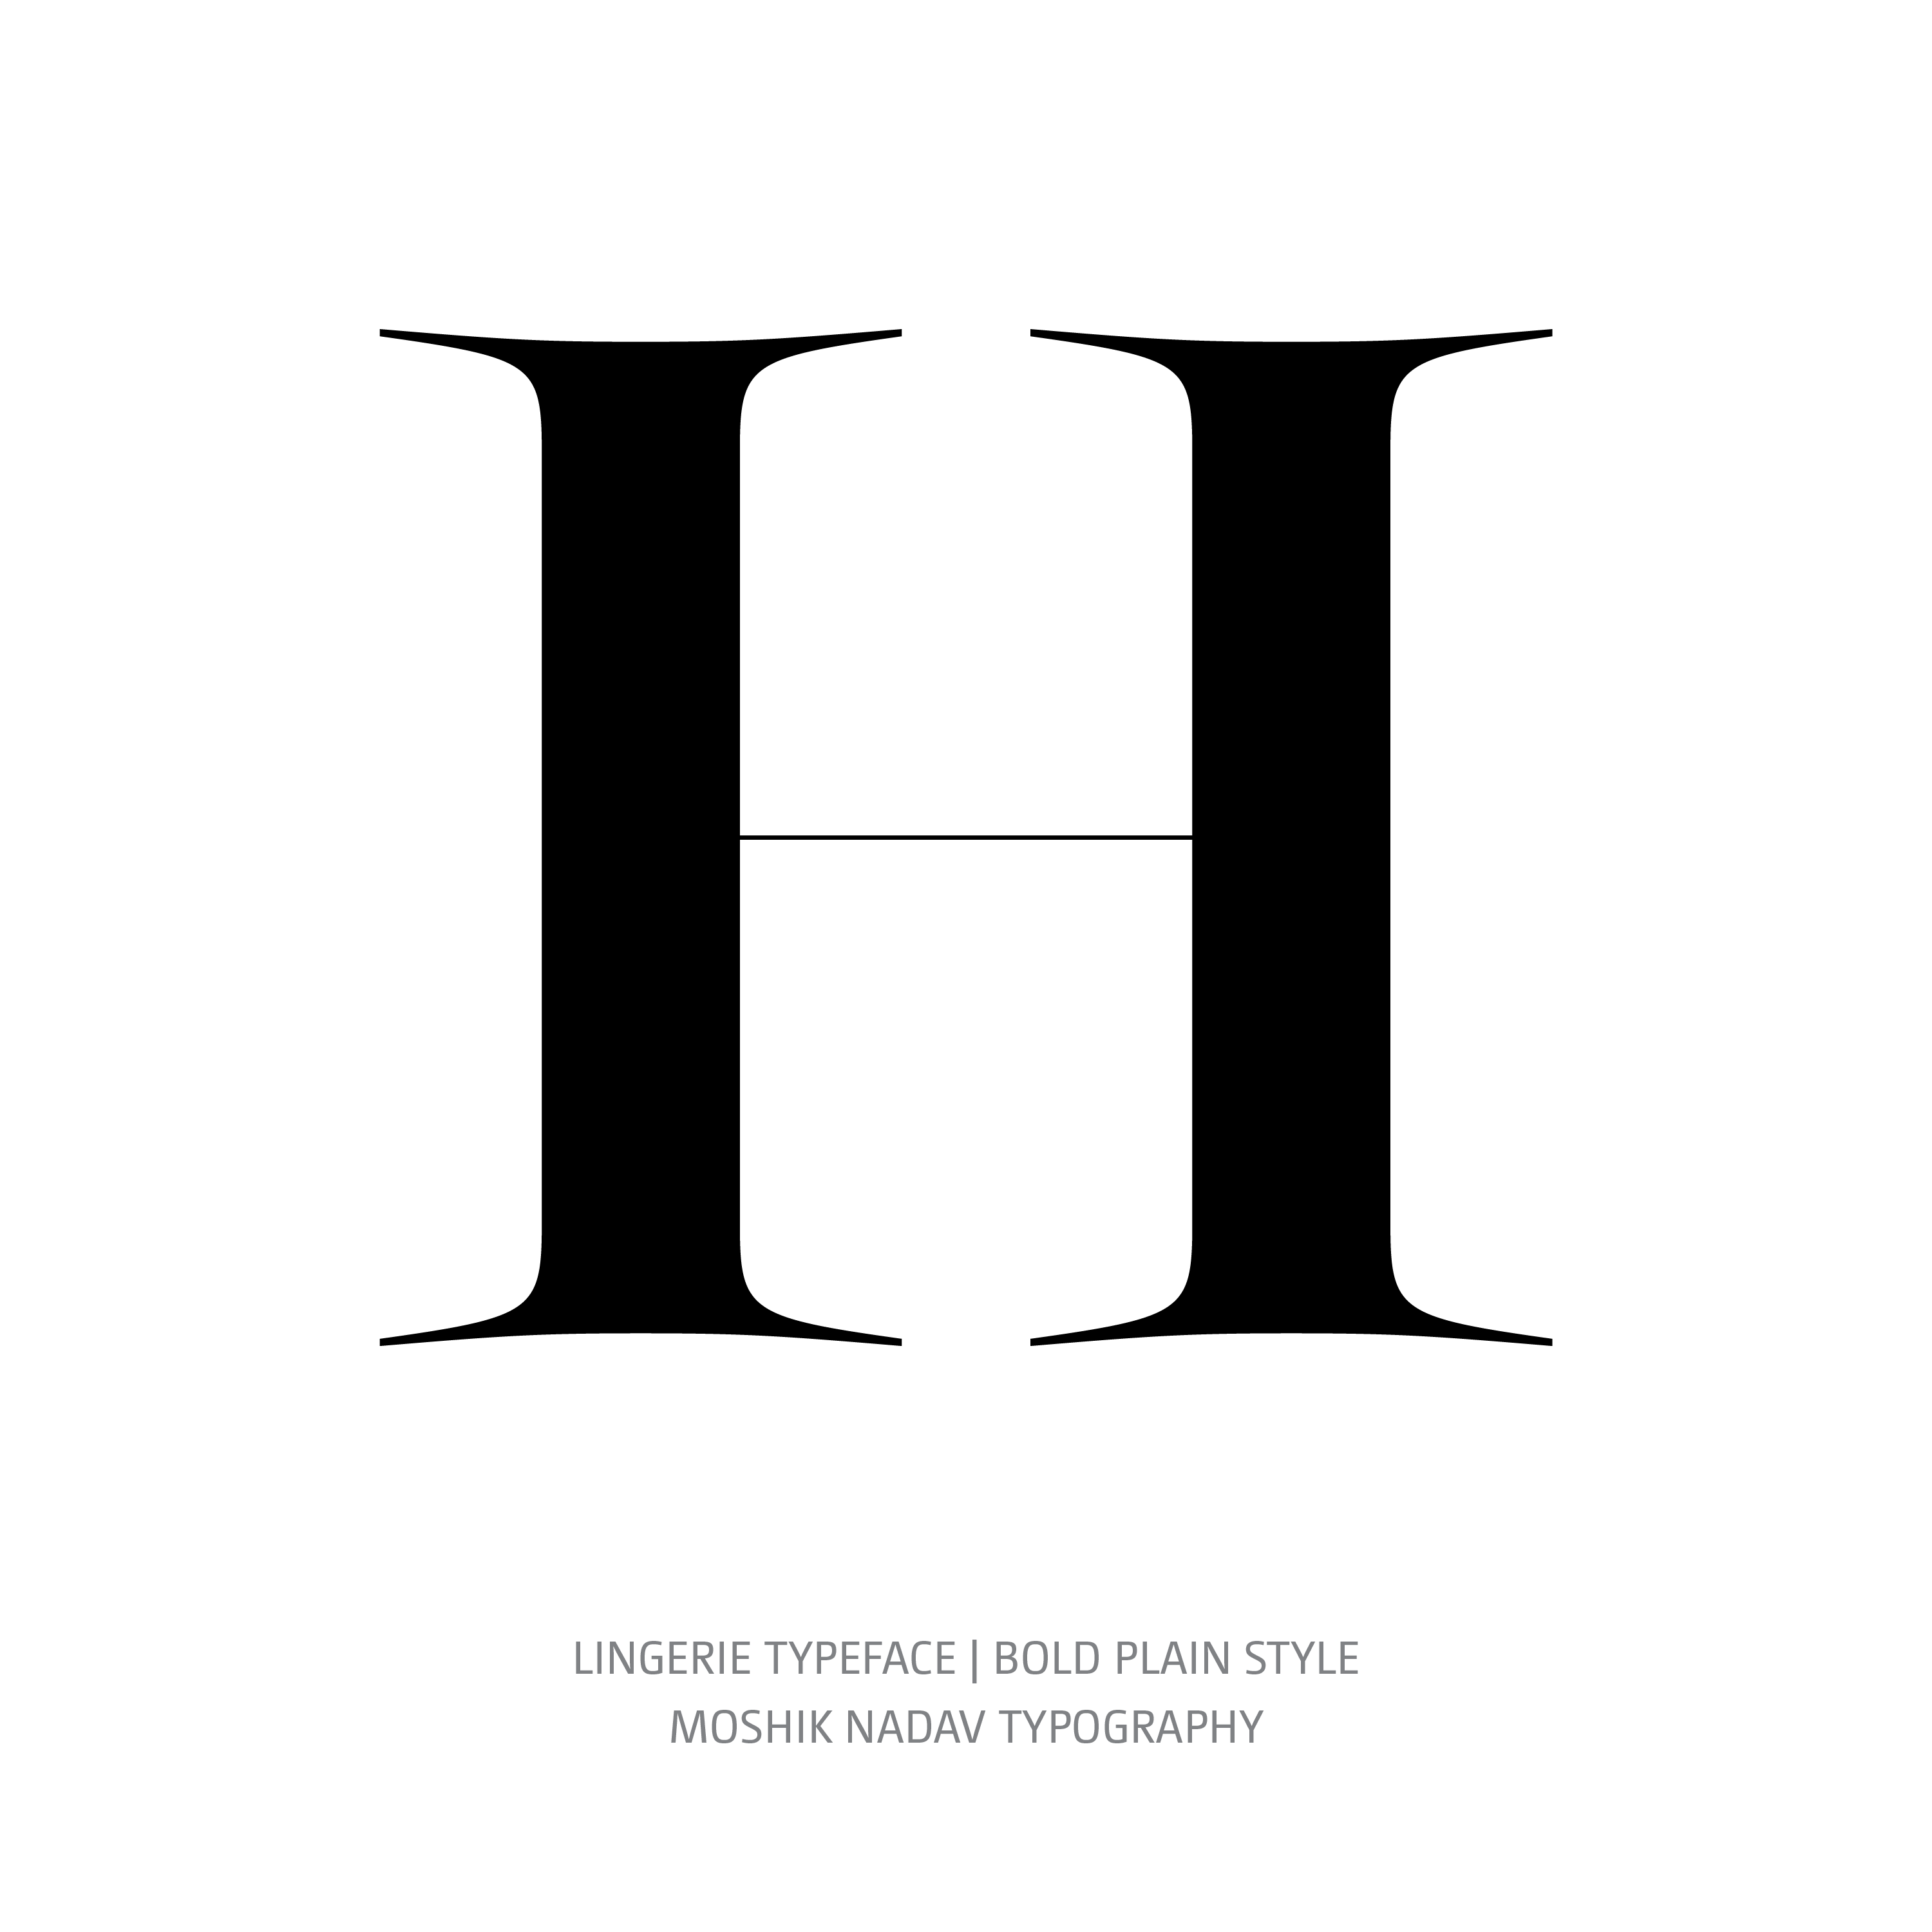 Lingerie Typeface Bold Plain H